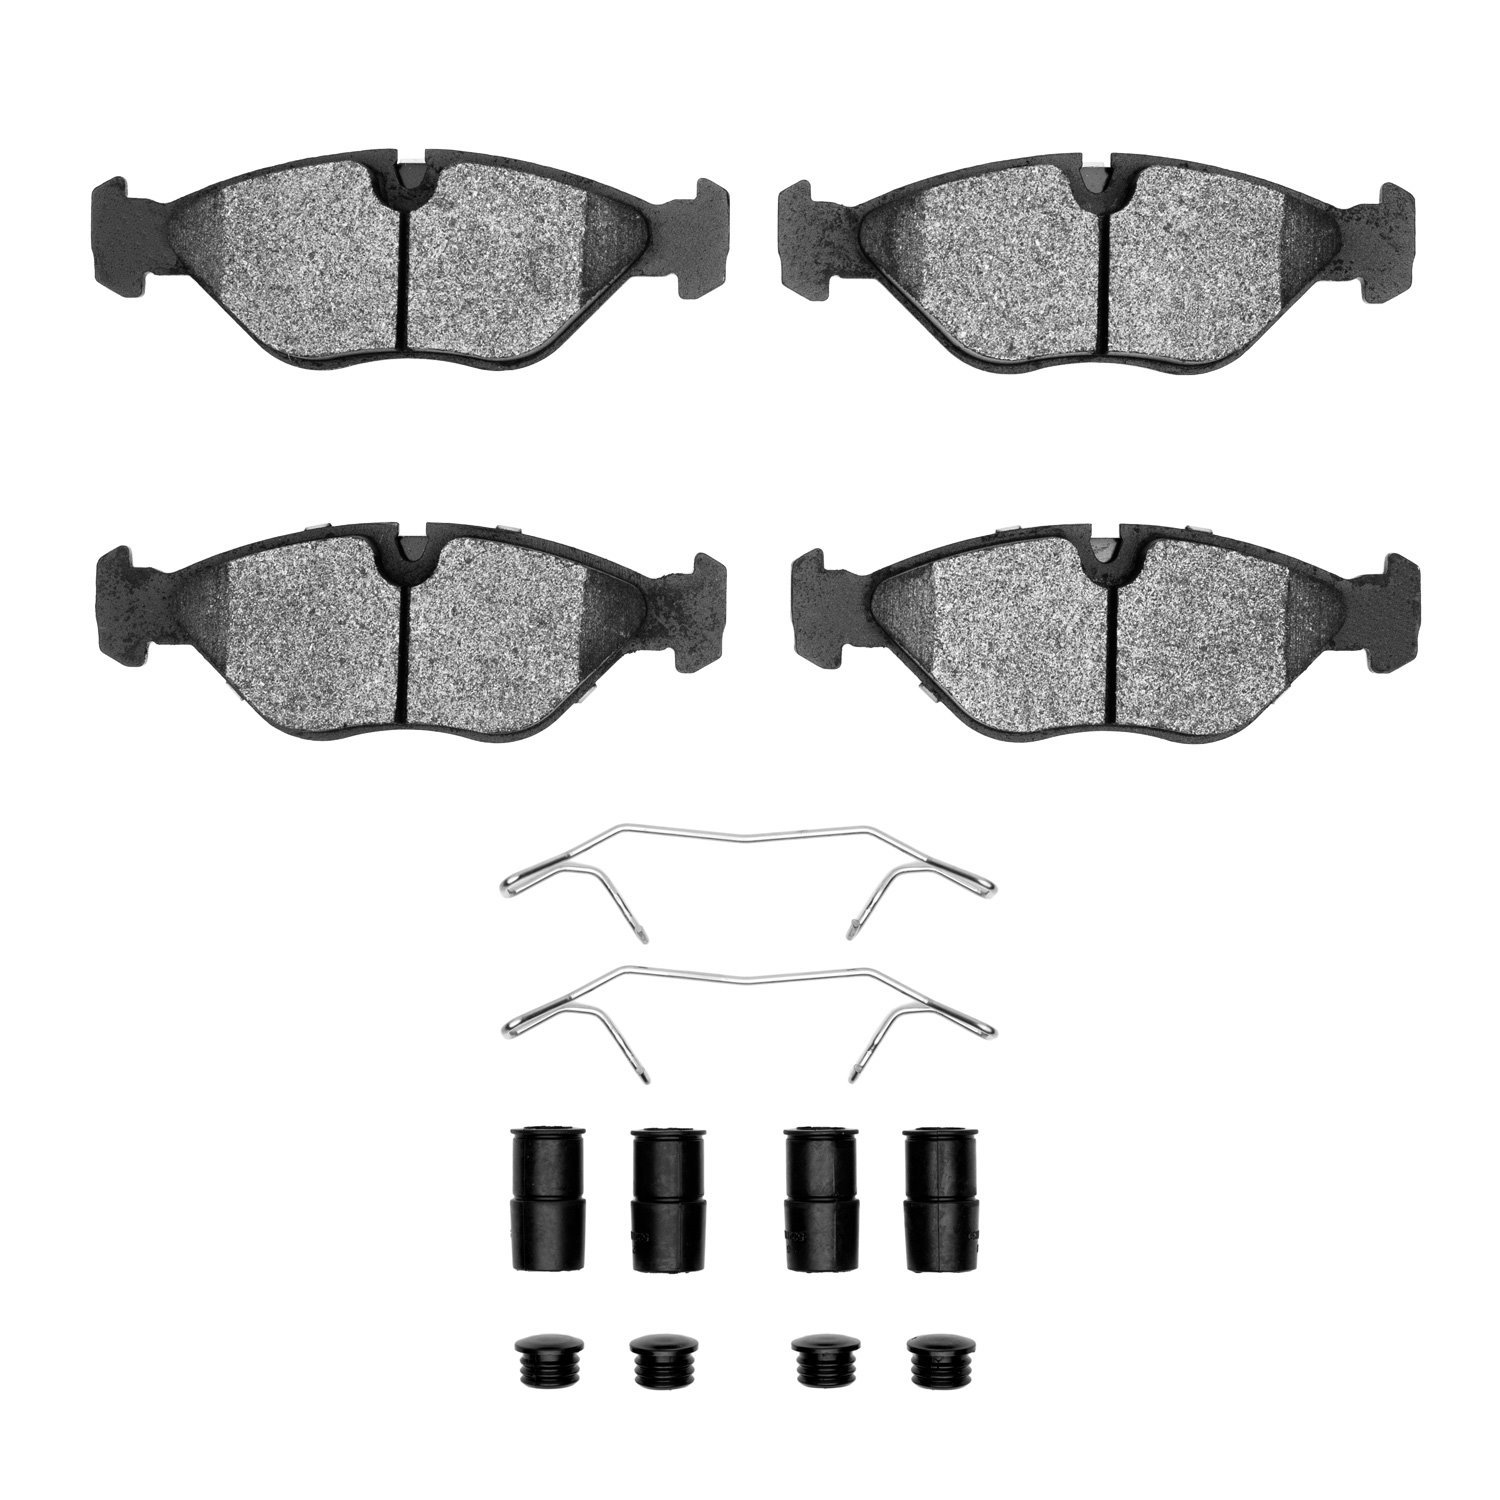 1310-0403-01 3000-Series Ceramic Brake Pads & Hardware Kit, 1988-1998 GM, Position: Front